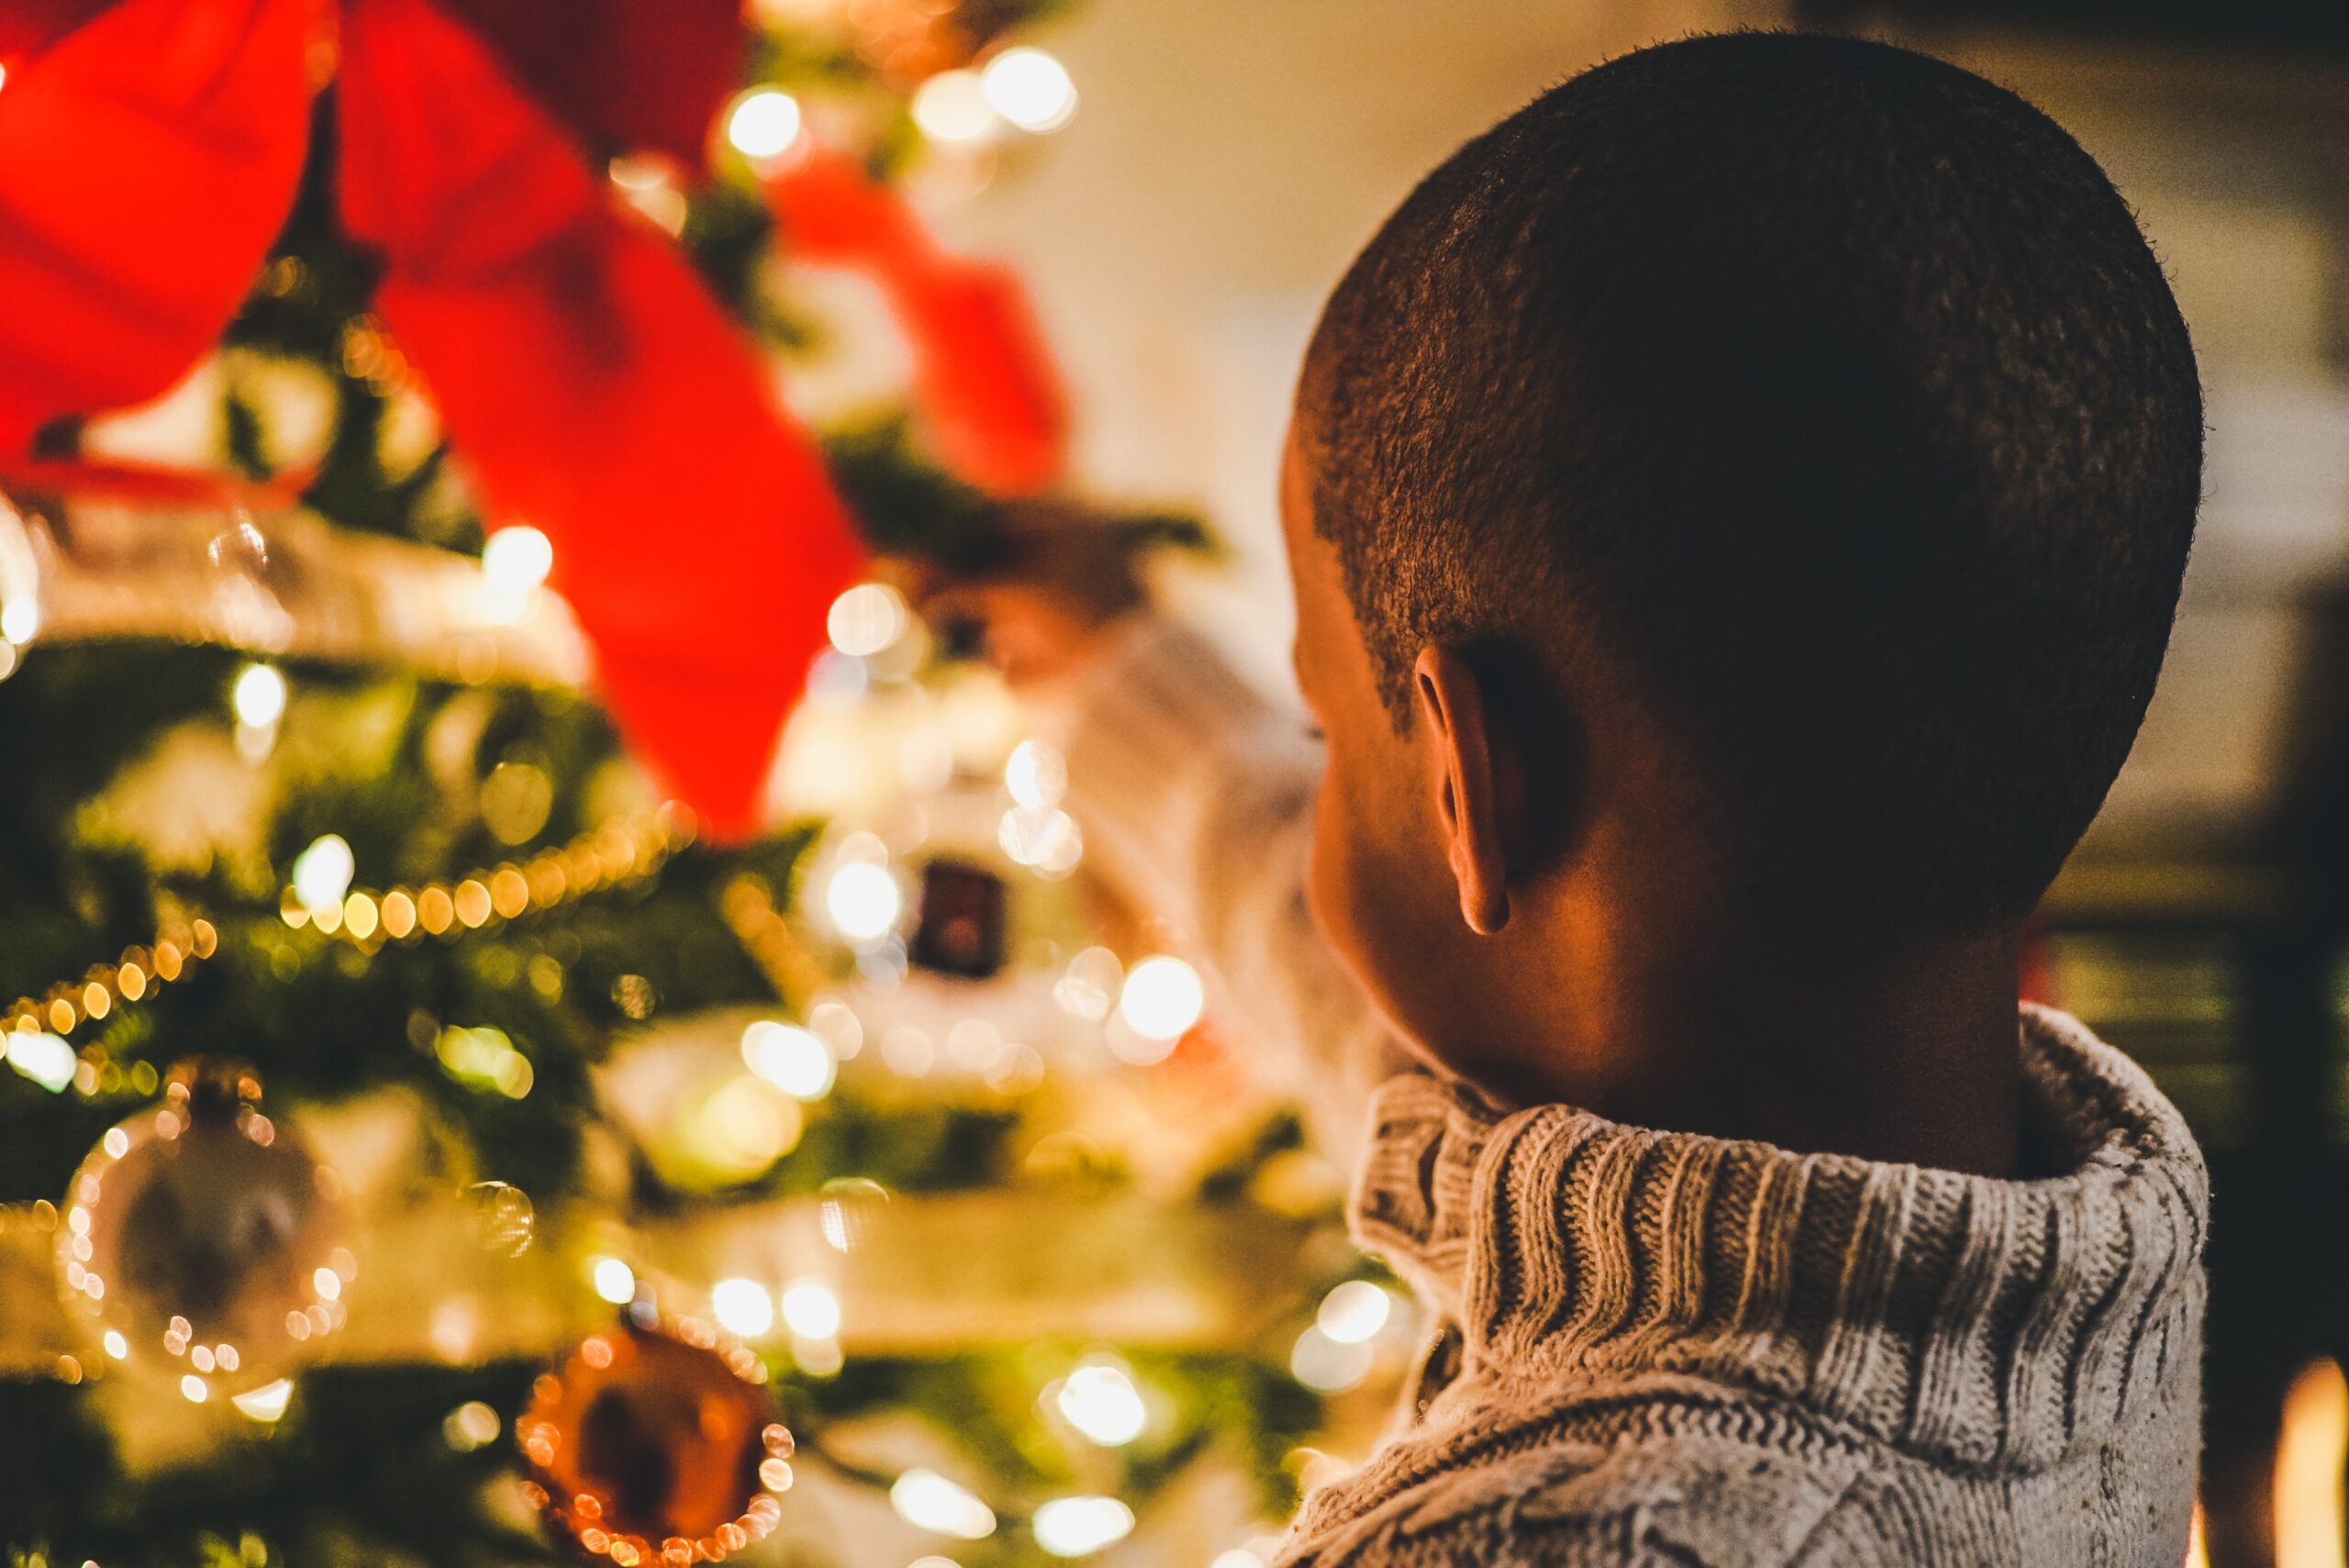 Adopt a Lifeline Family for Christmas - Vista